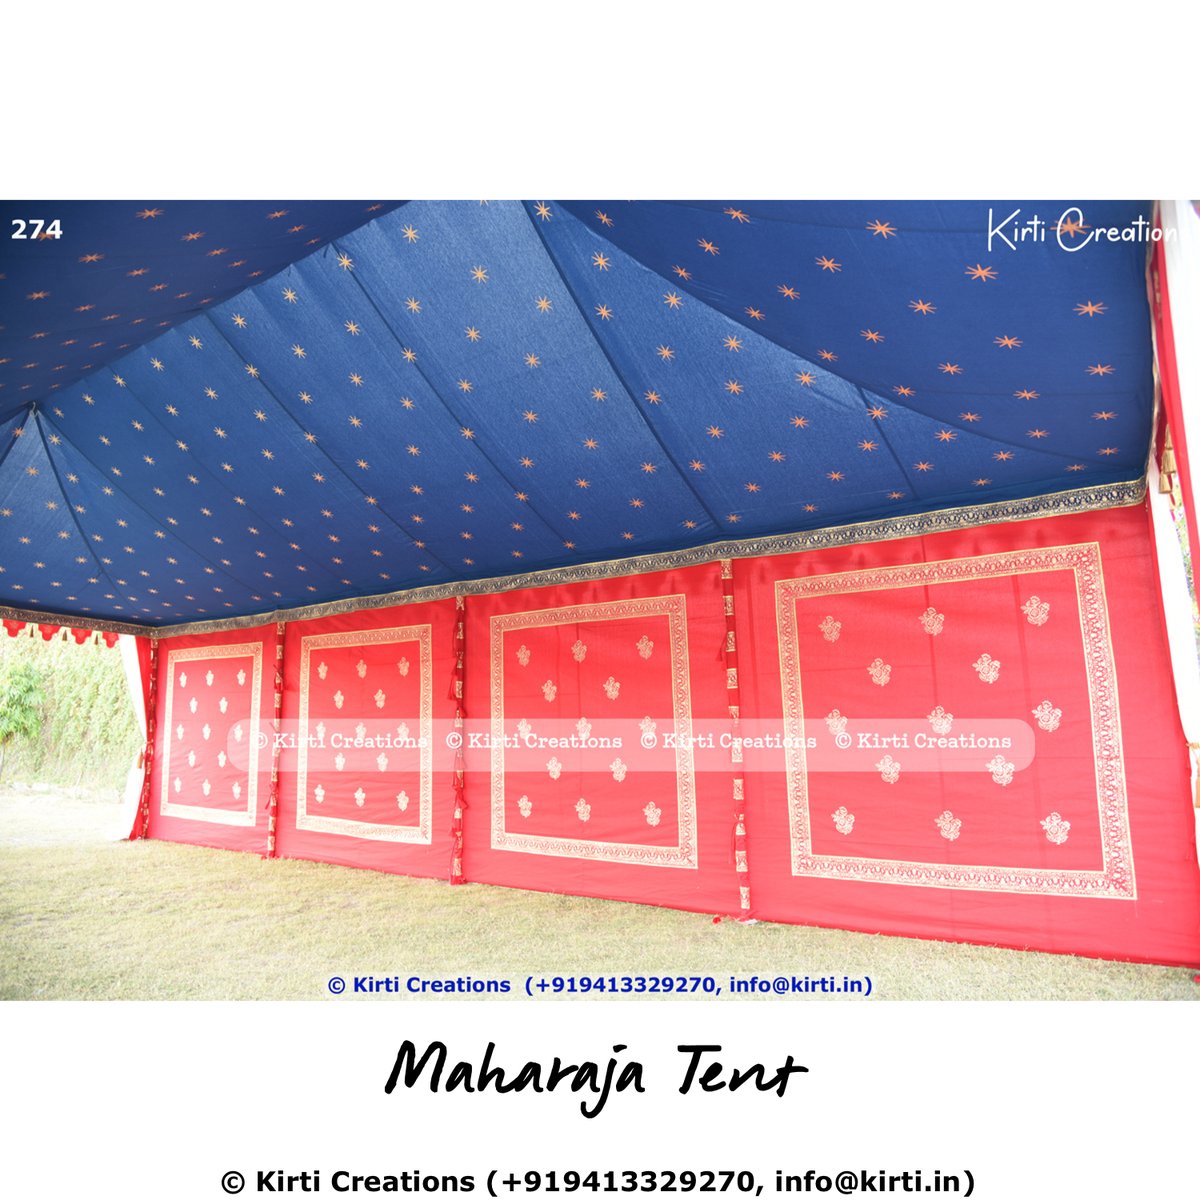 Maharaja Tent
.
#indiantent #indiantents #indiantentcompany #tentfactory #partytent #luxurytent #mughaltent #canopy #shamiyana #shamiyana
.
.
indiantent.com